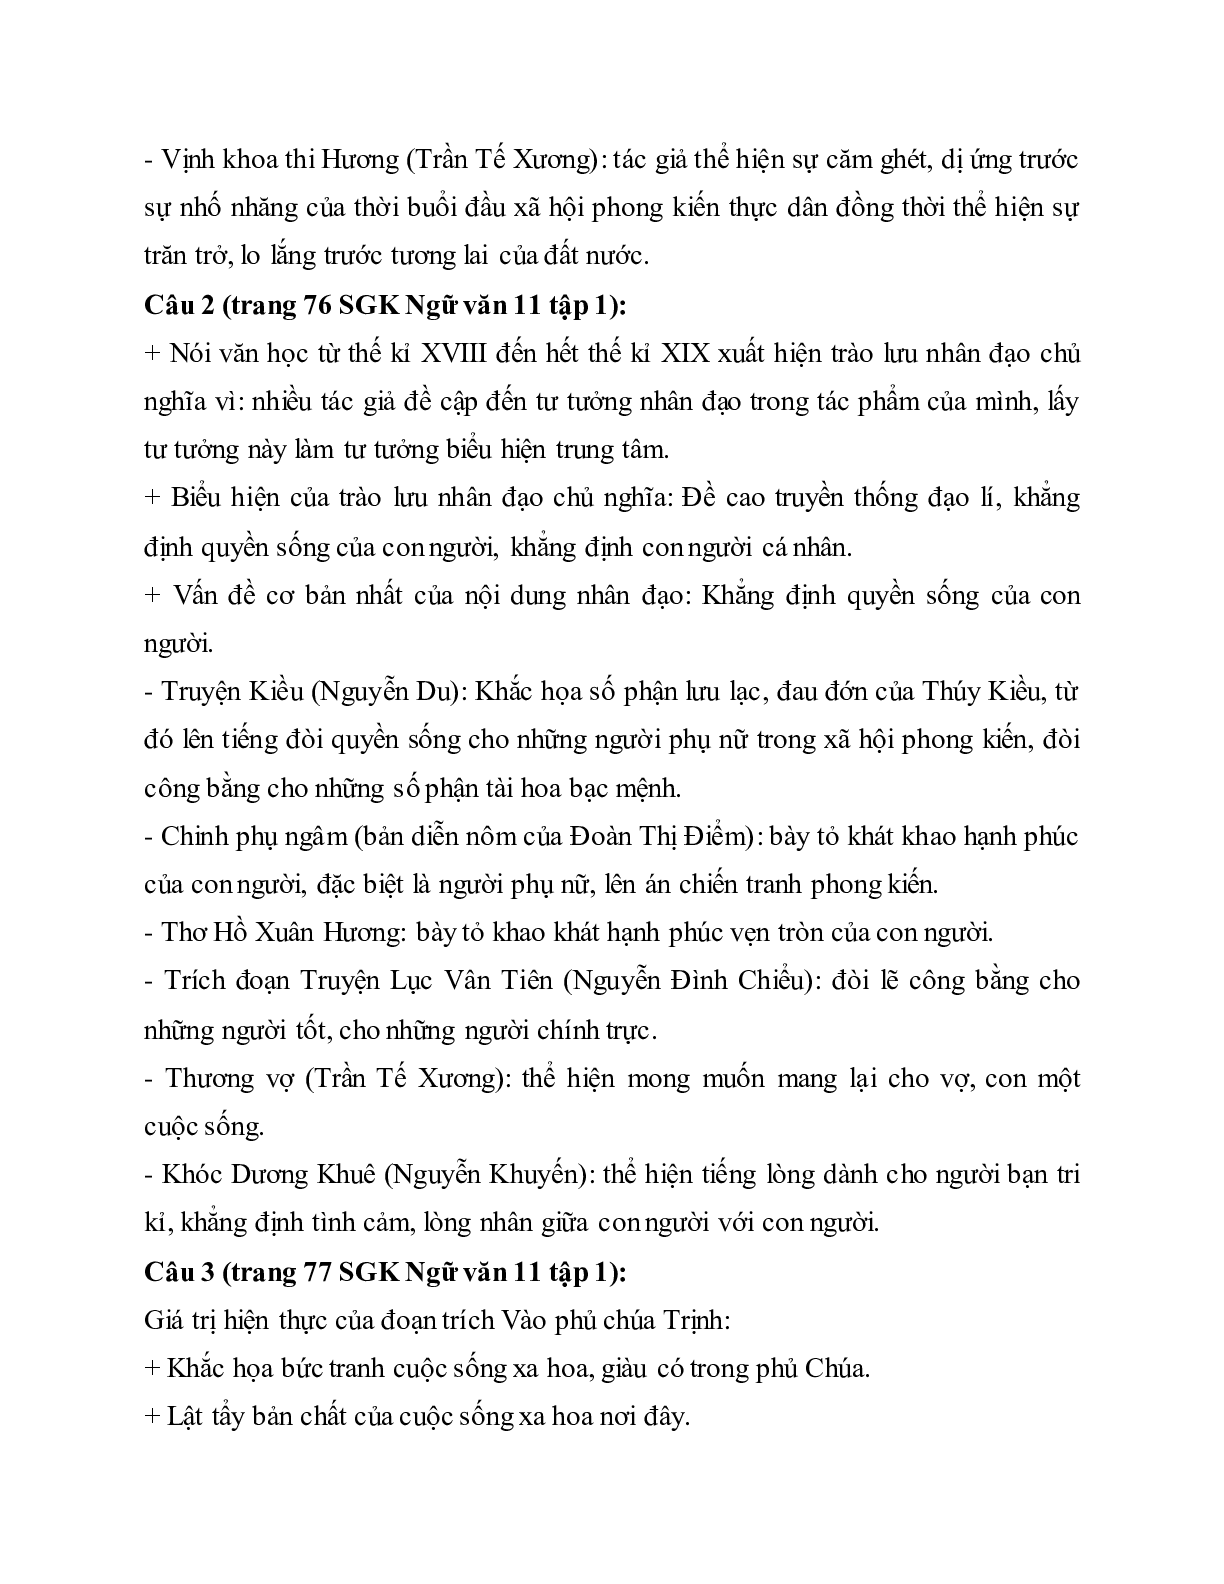 Soạn bài Ôn tập văn học trung đại Việt Nam - ngắn nhất Soạn văn 11 (trang 2)